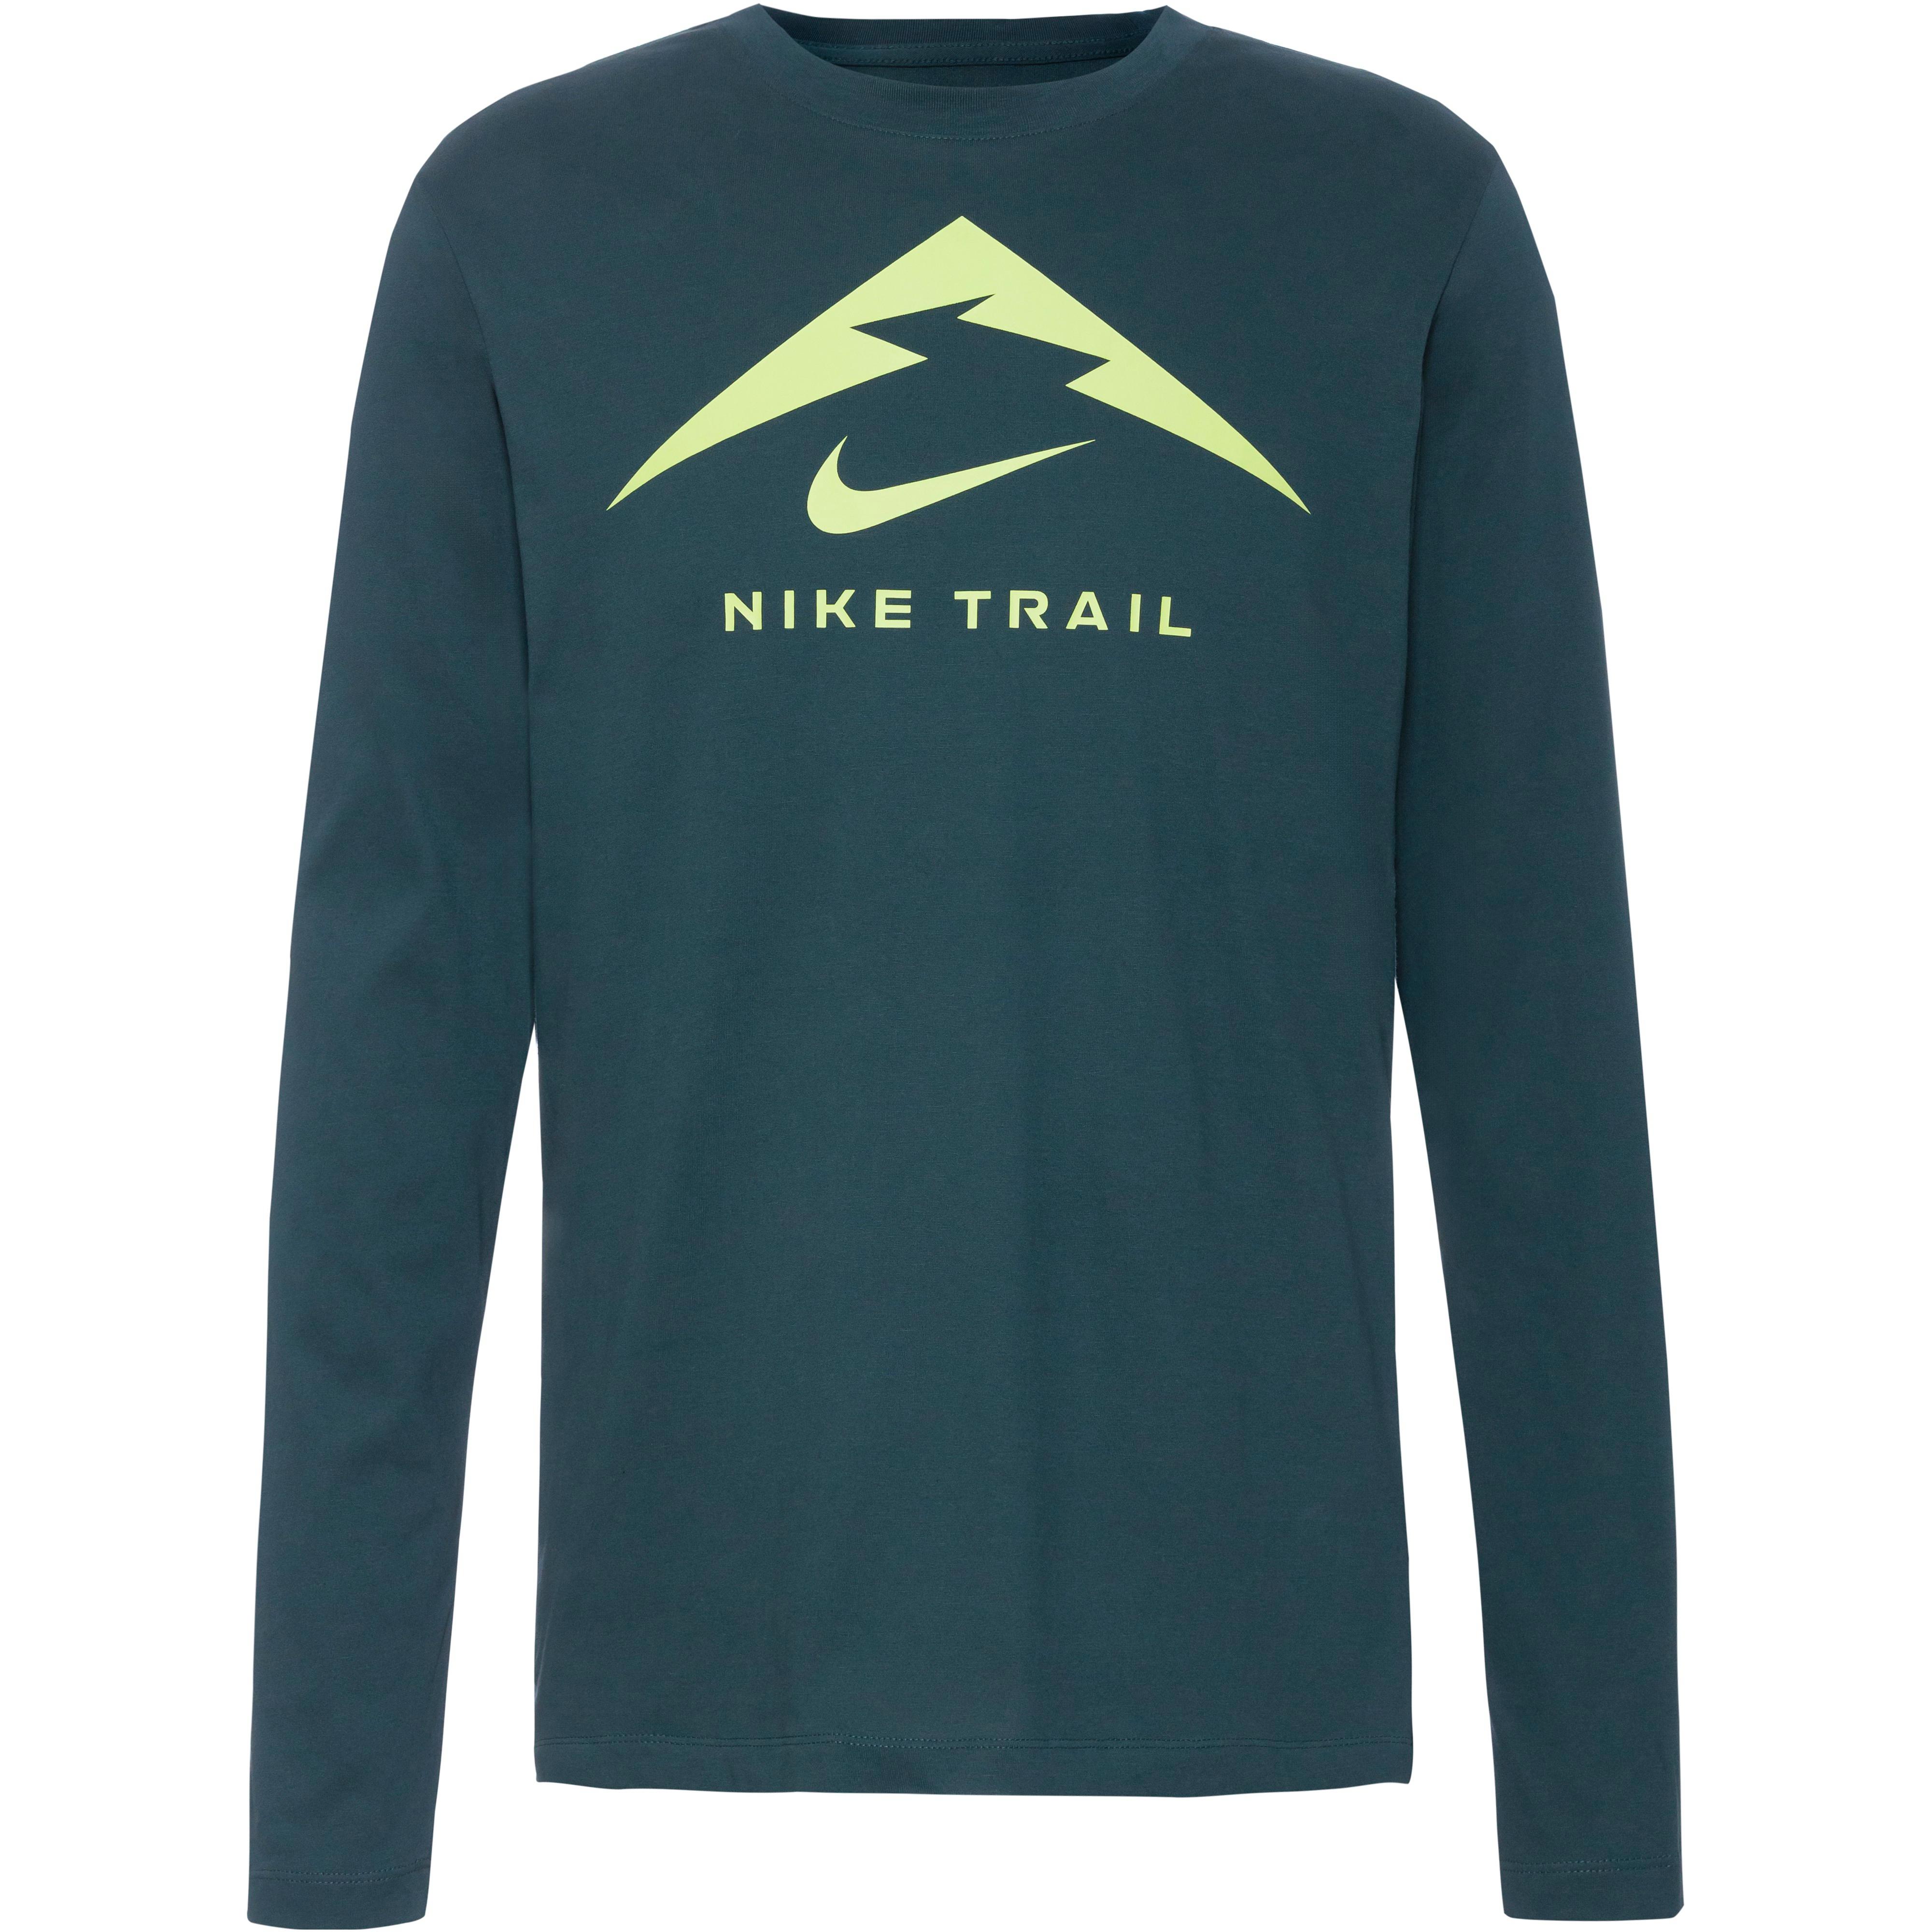 bestellen online bequem Nike Shirts SportScheck bei